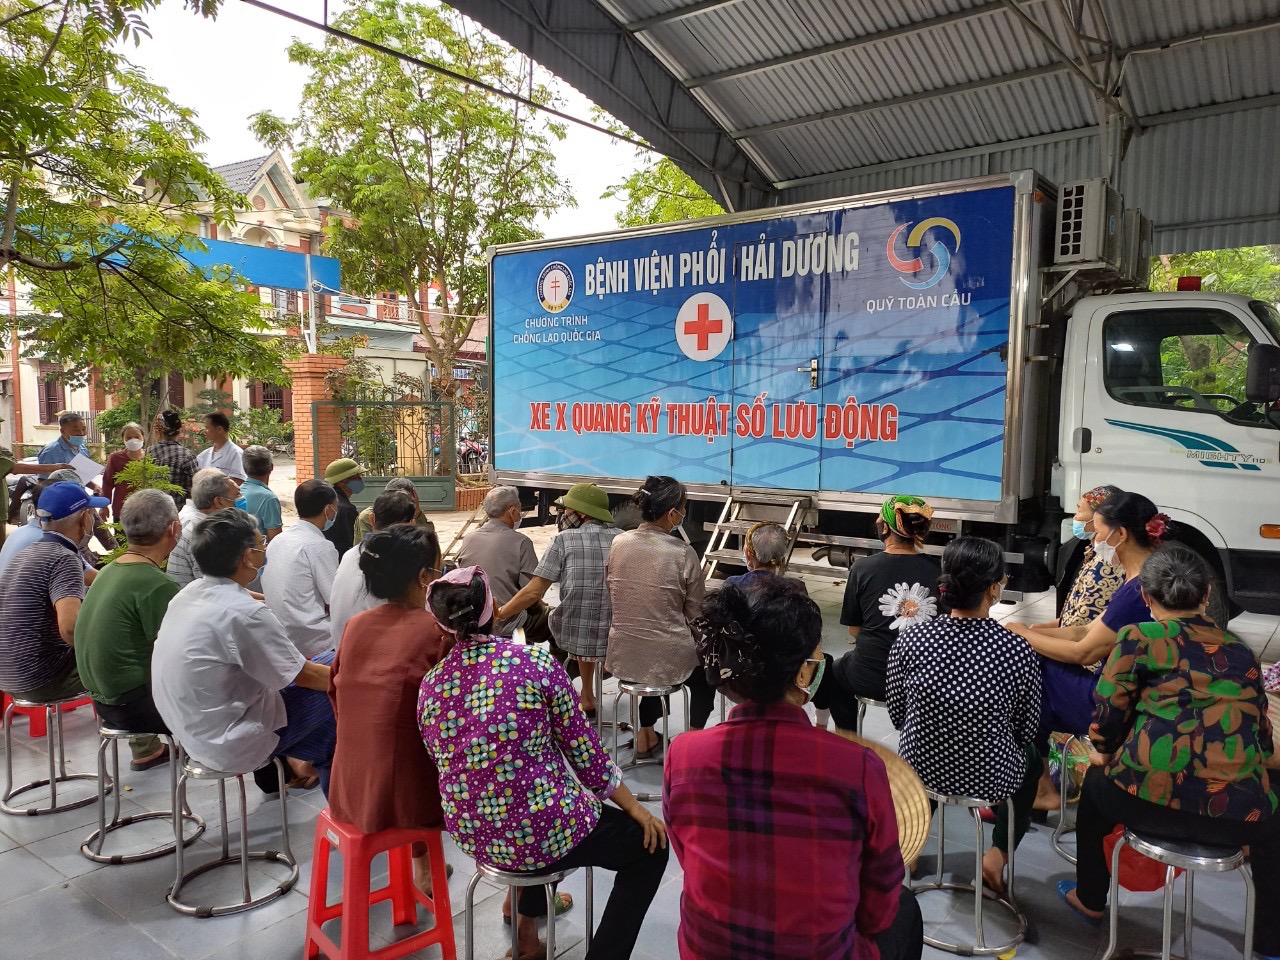 Bệnh viện Phổi Hải Dương triển khai “Chiến lược 2X phát hiện bệnh Lao” tại Thành phố Chí Linh và Thị xã Kinh Môn.